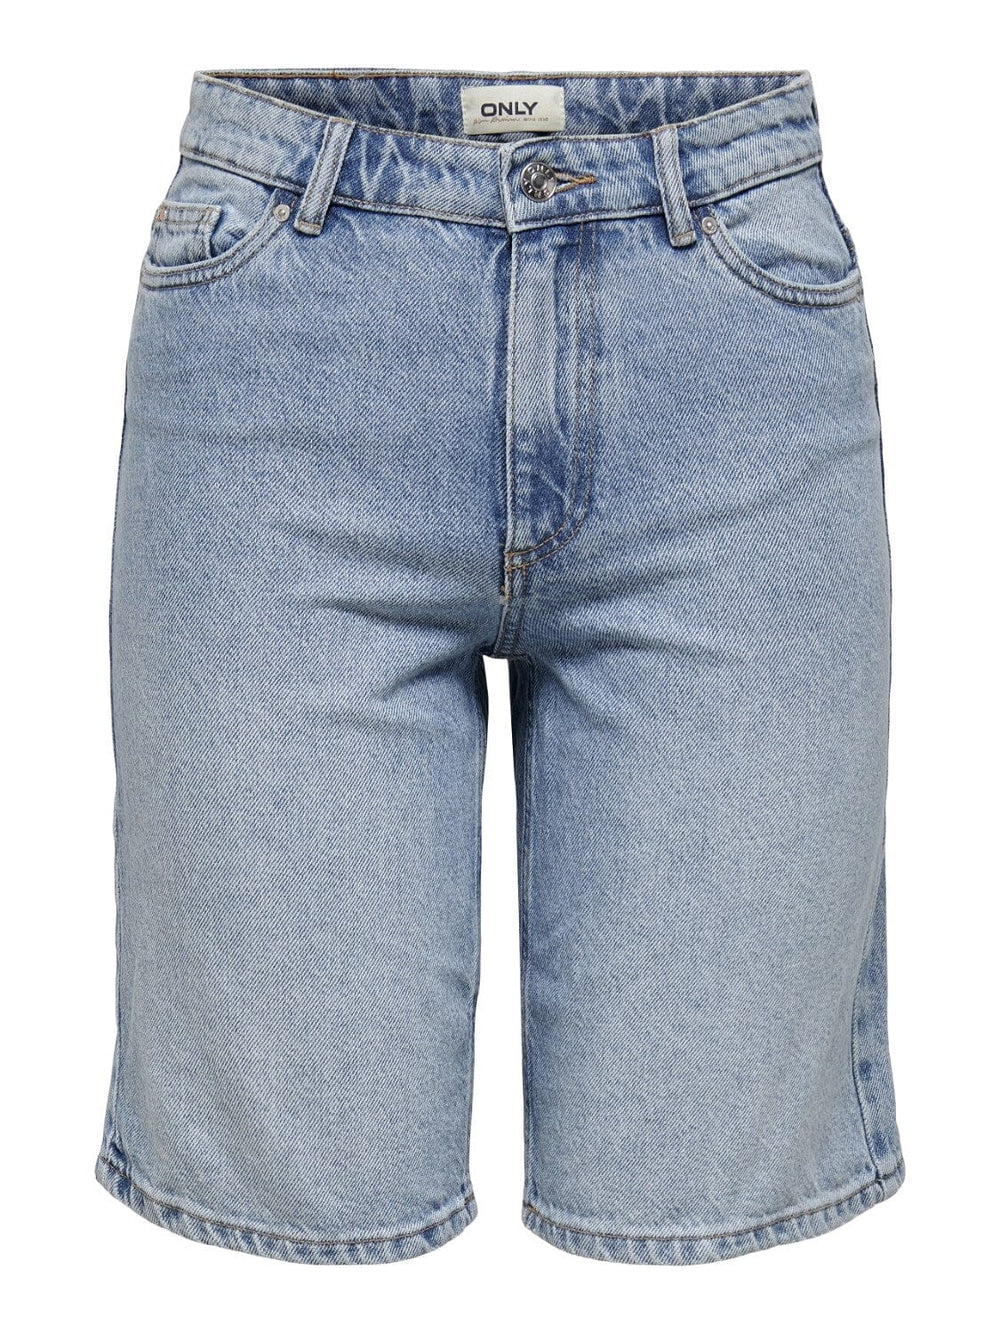 Only - Onlsonny hw wide dnm shorts - Light Blue Denim Shorts 